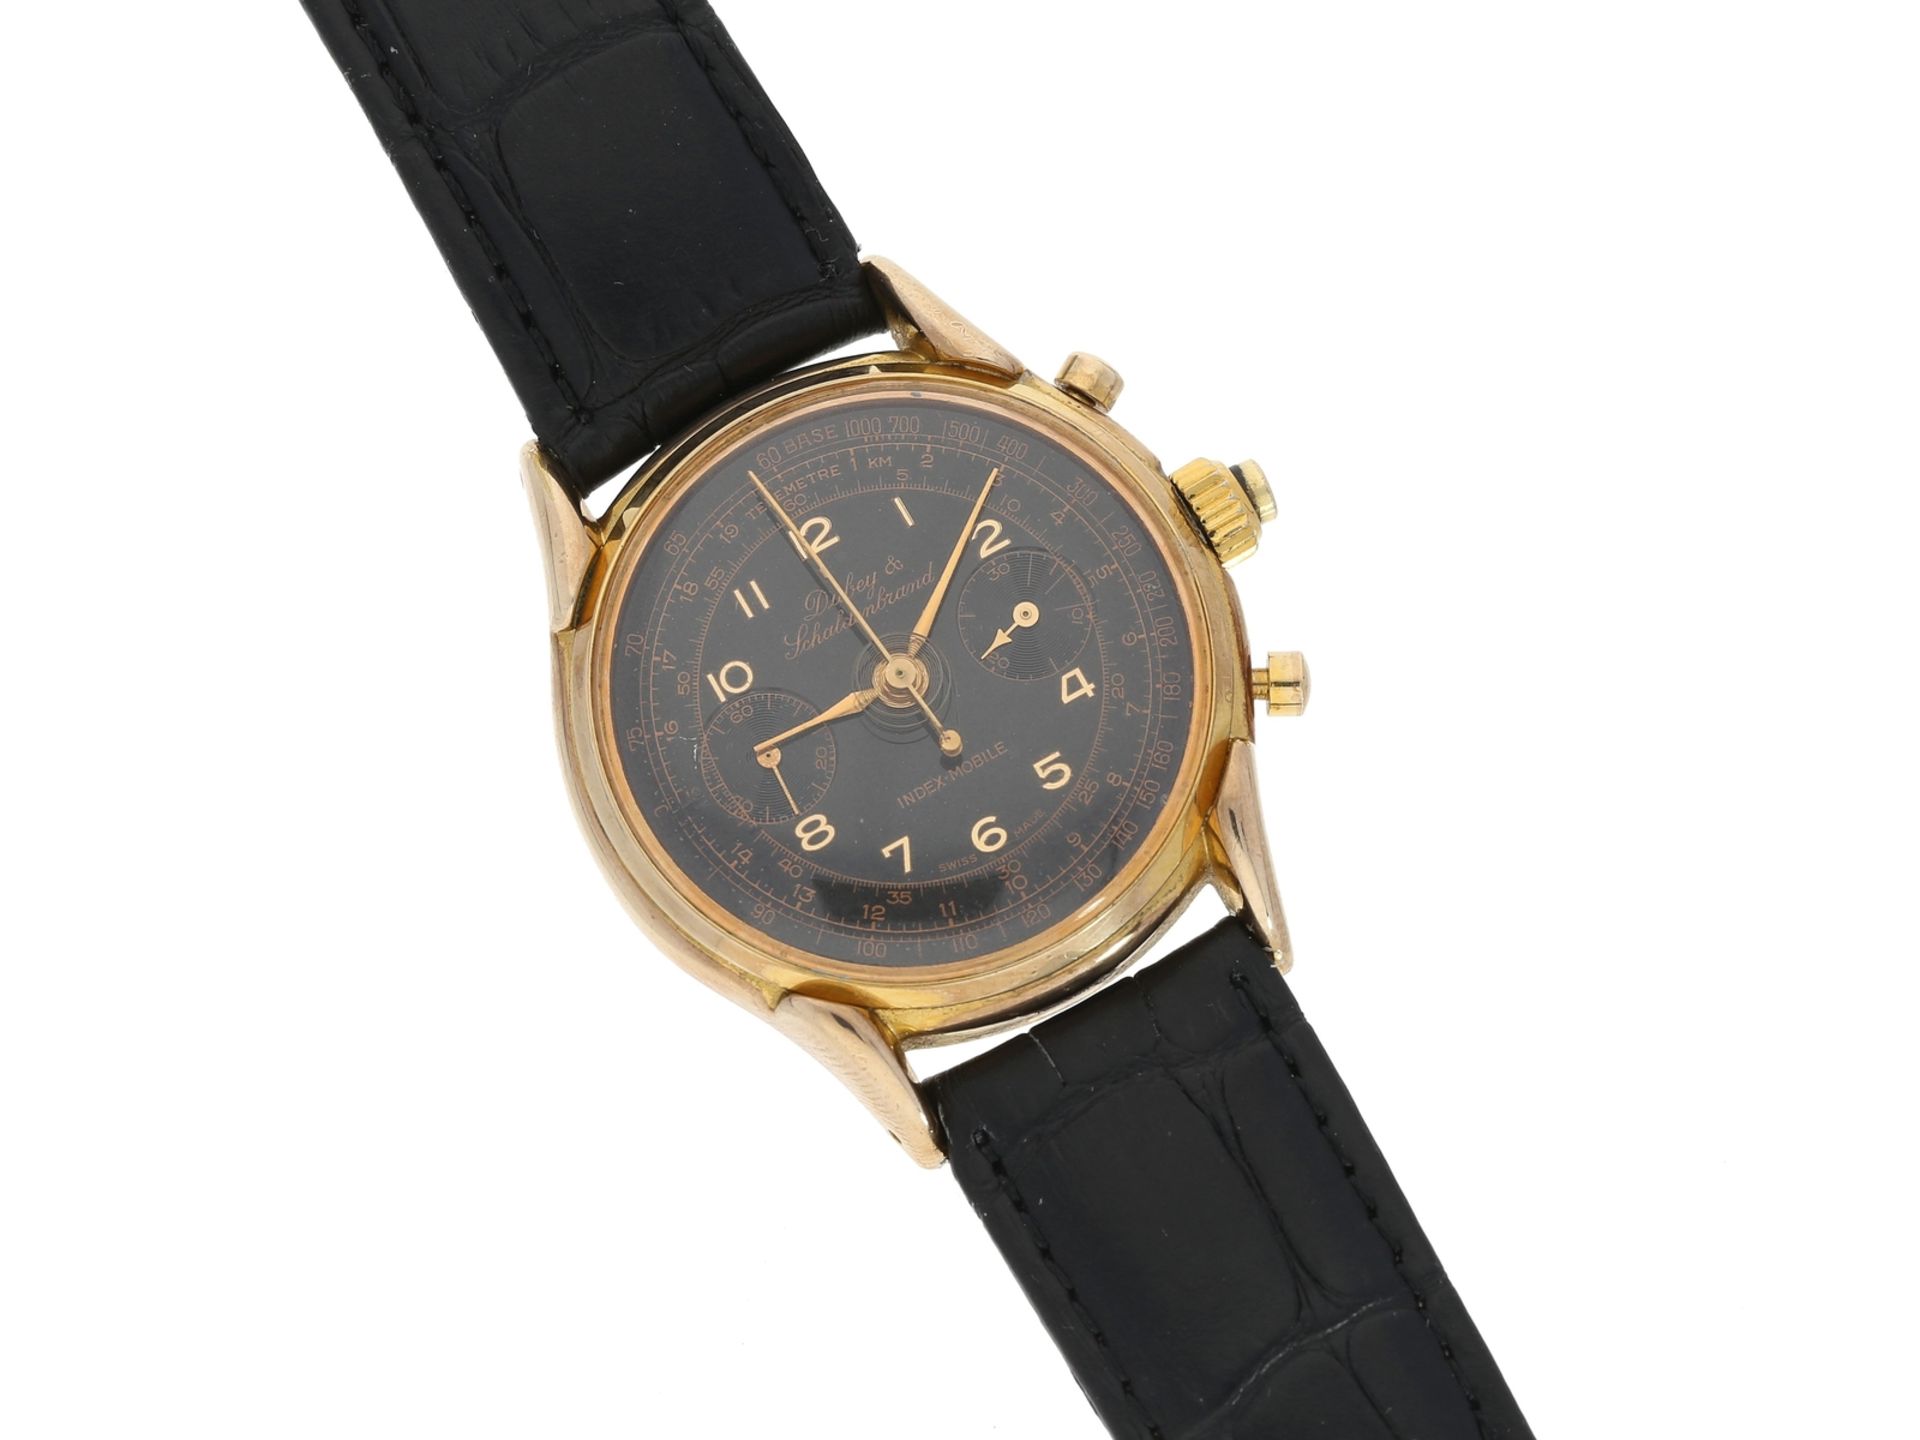 Armbanduhr: seltene vintage Herrenuhr mit Schleppzeiger-Chronograph, Dubey & Schaldenbrand "Index Mo